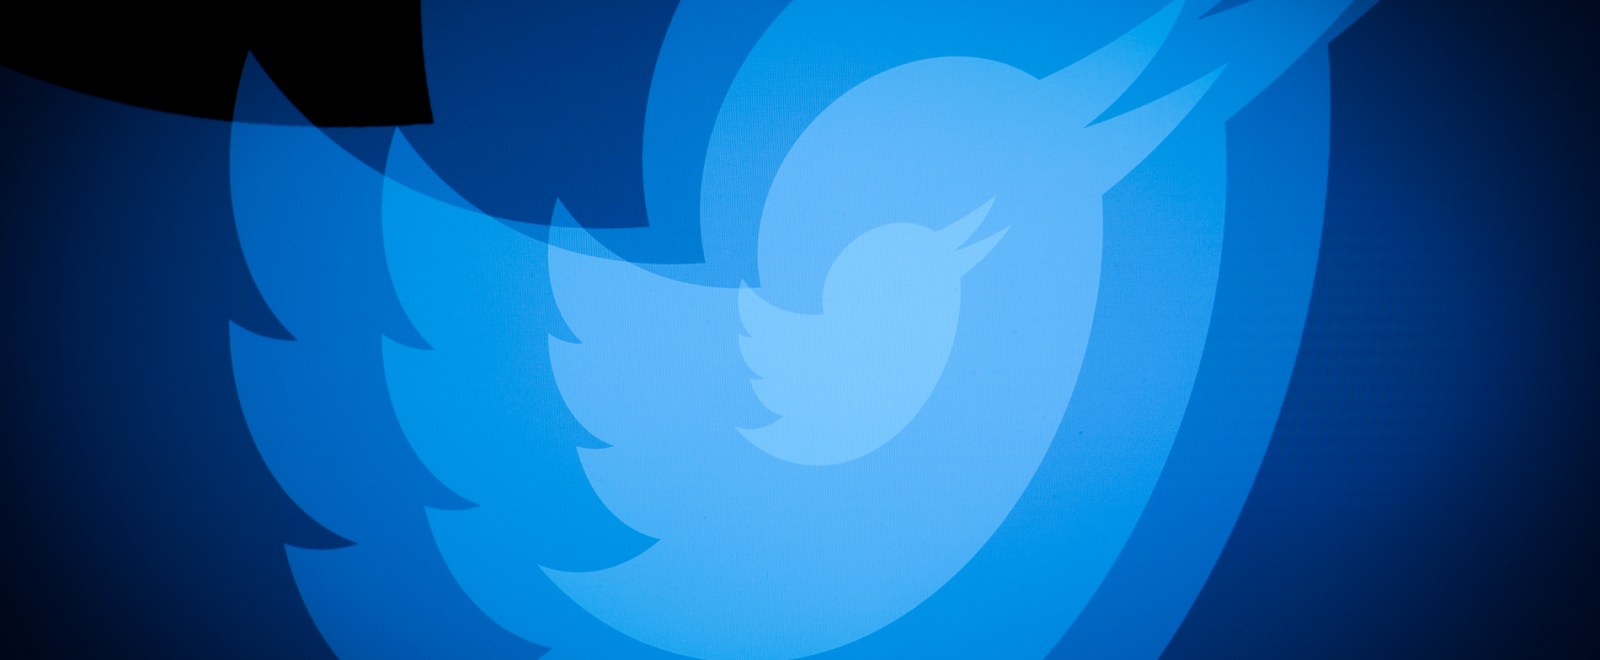 Twitter logo bird